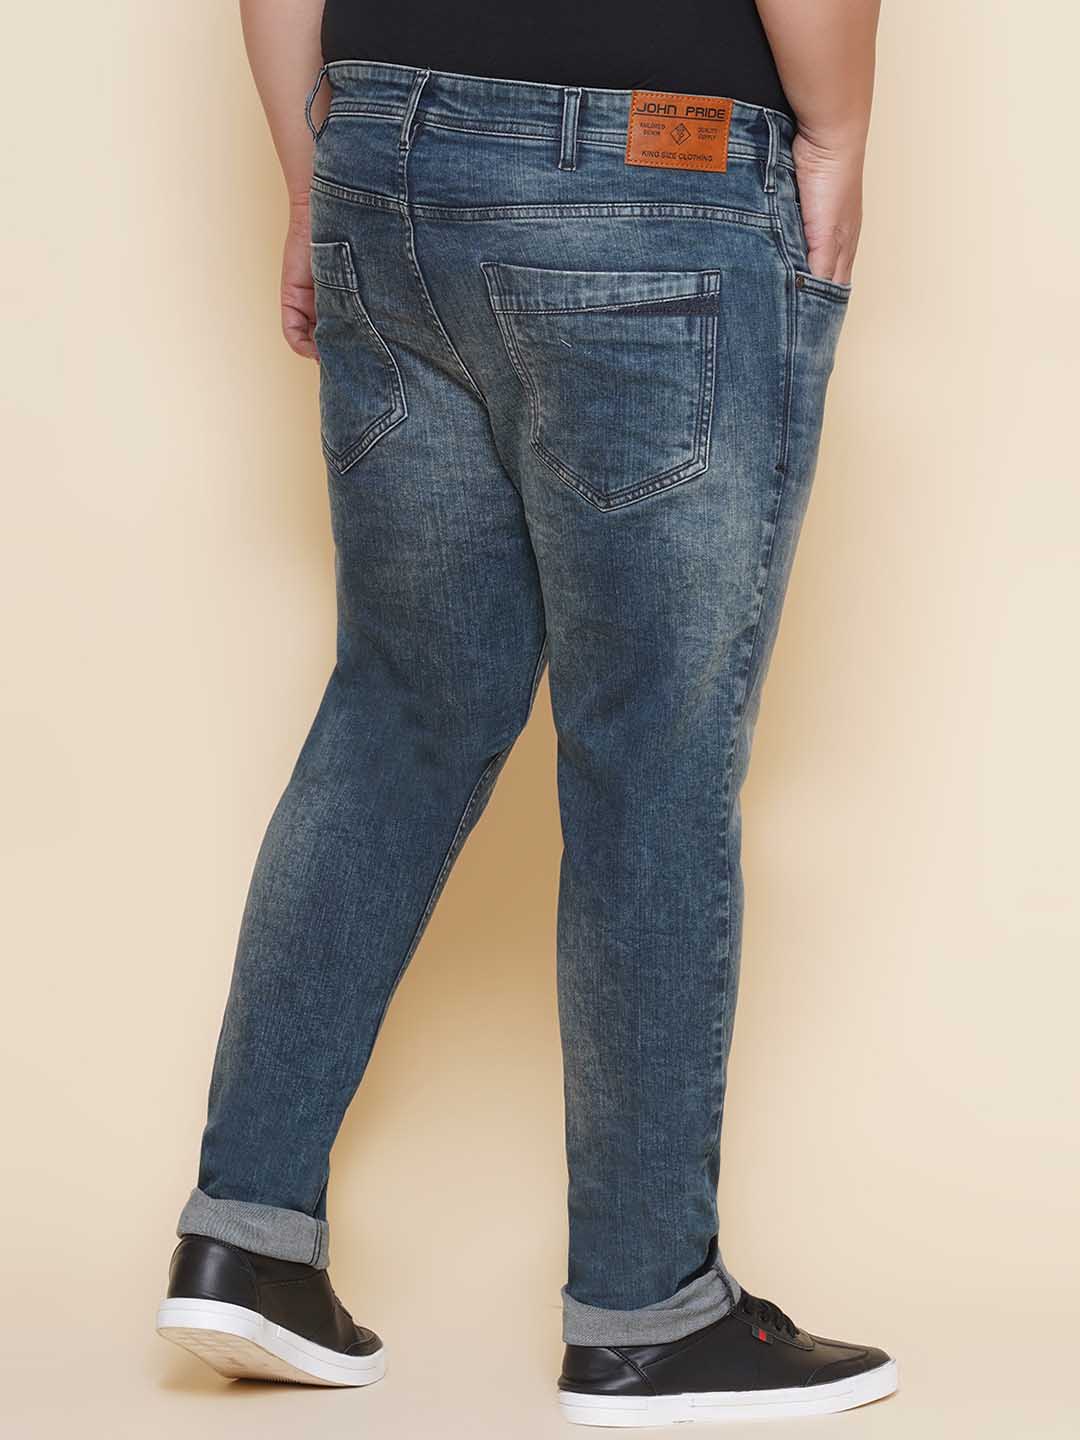 bottomwear/jeans/EJPJ25139/ejpj25139-5.jpg